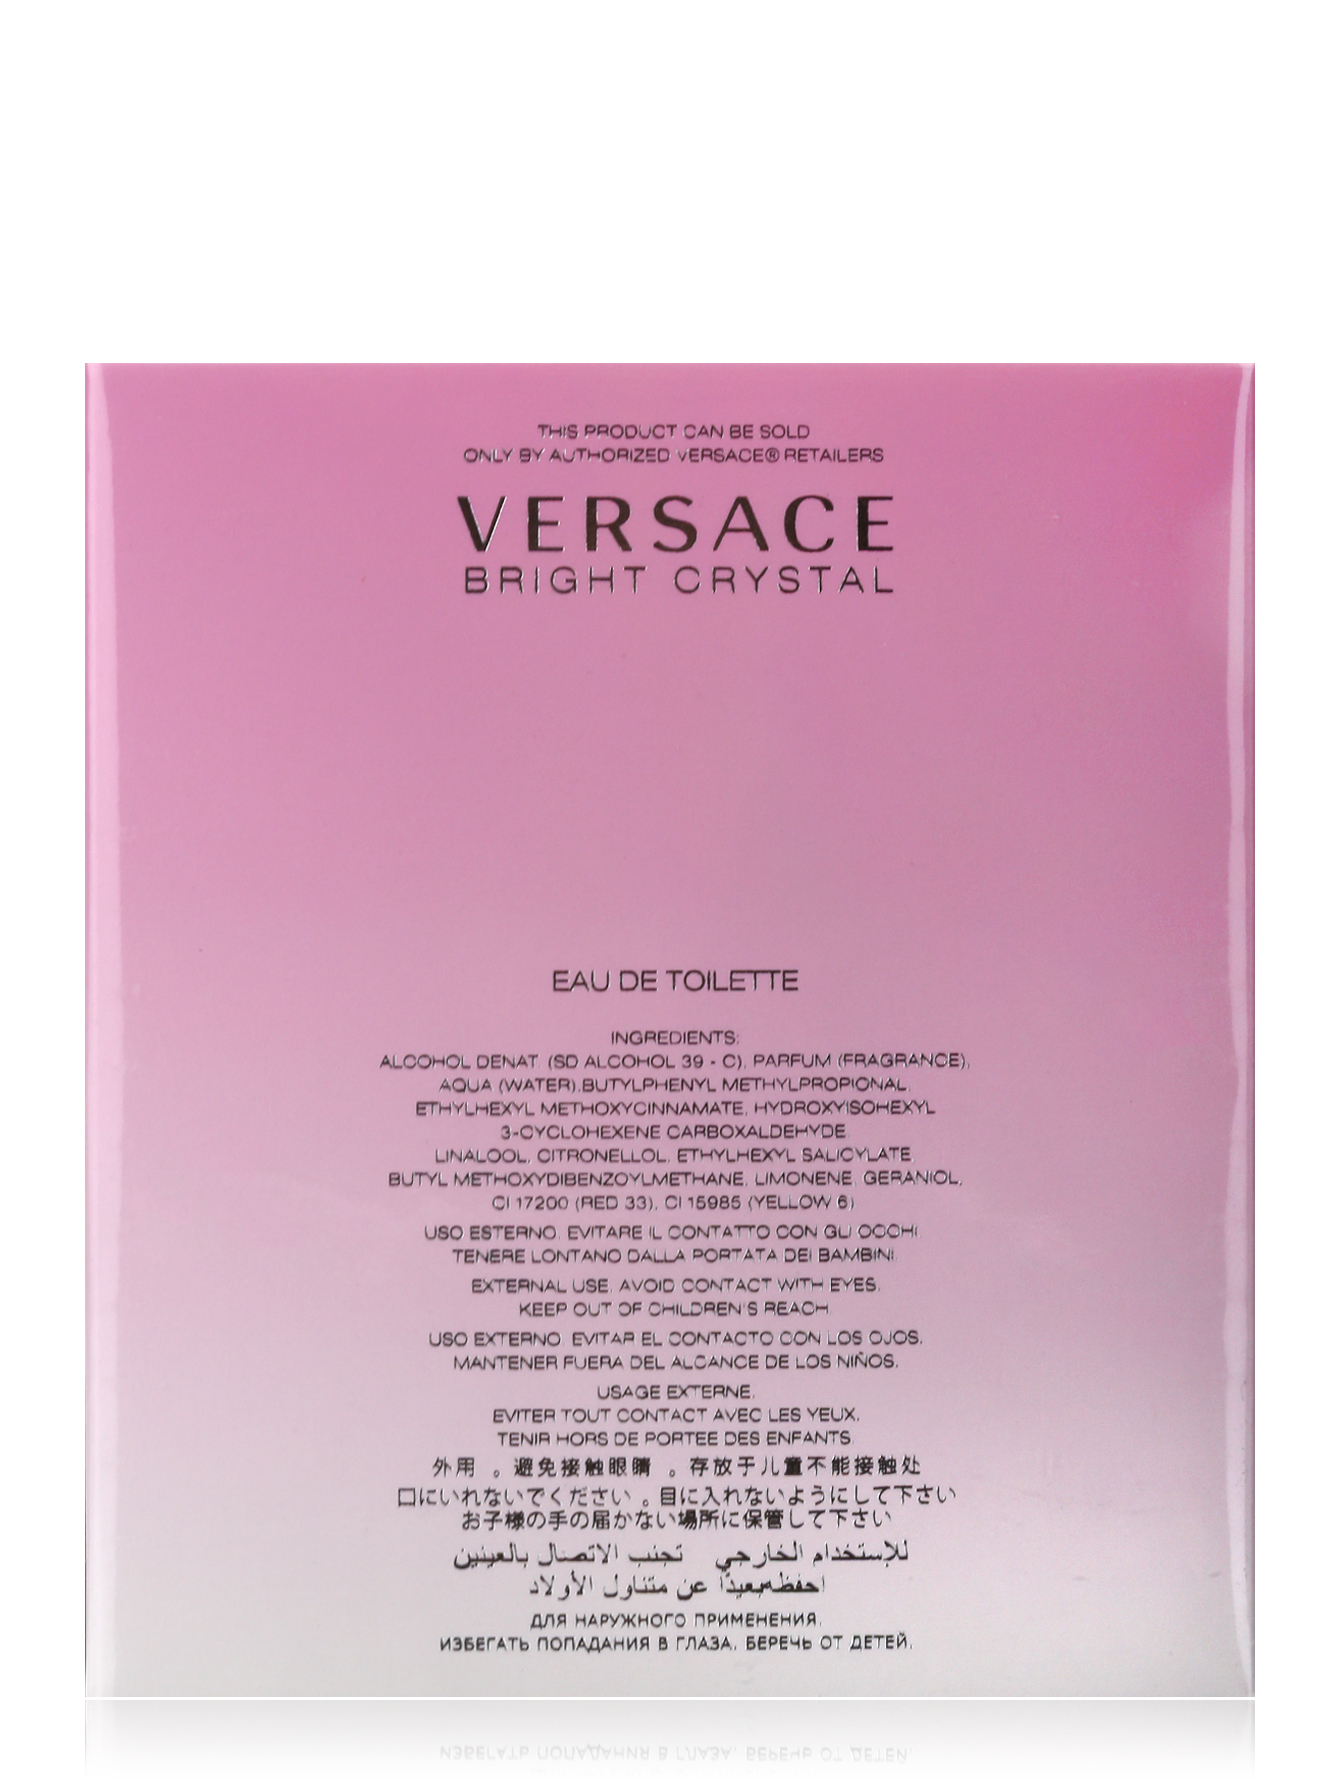  Туалетная вода - Versace Bright Crystal, 90ml - Модель Верх-Низ